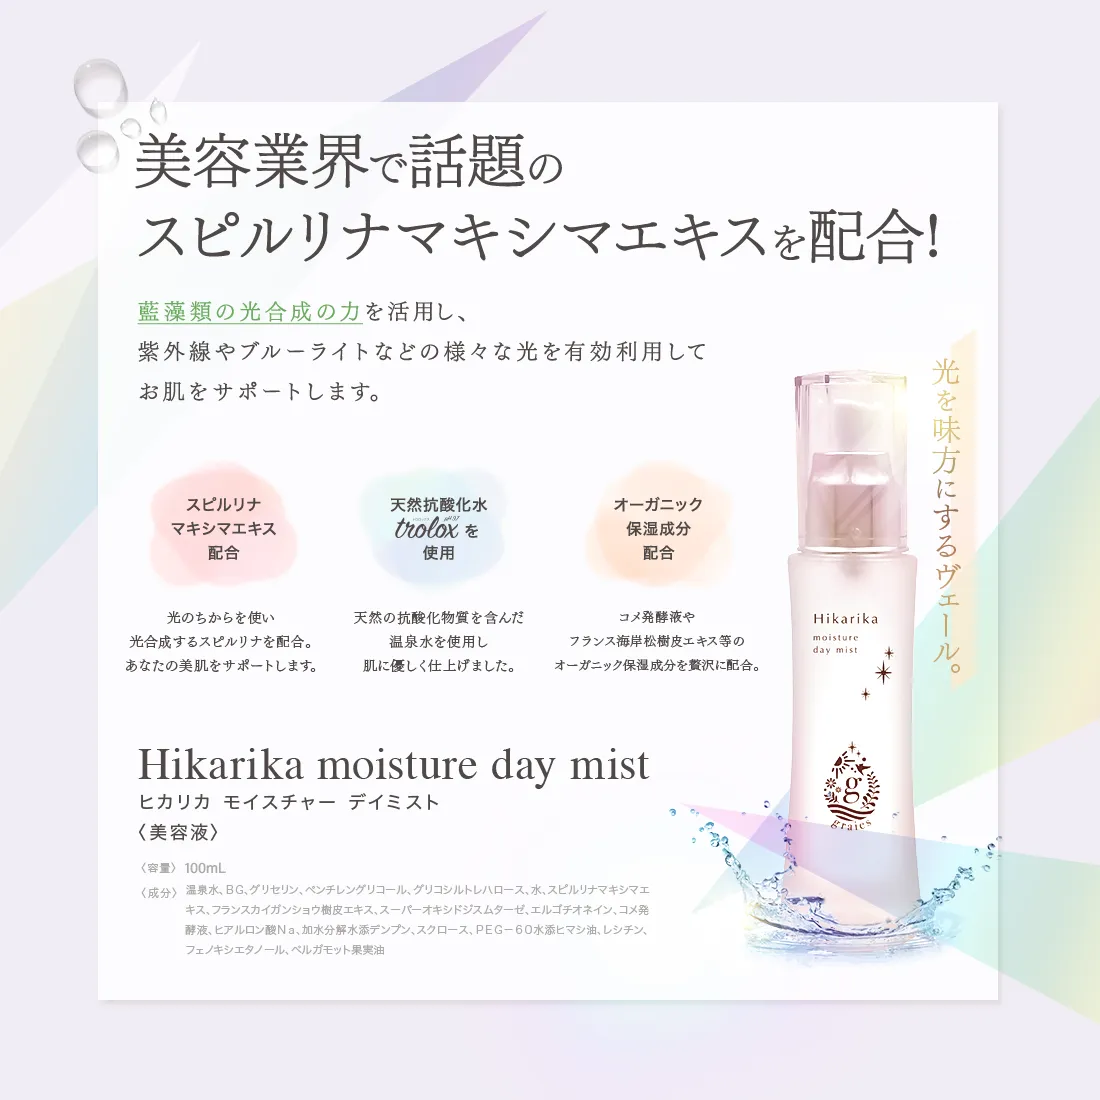 光を味方に、潤いのある毎日へ。Hikarika moisture day mist（ヒカリカ モイスチャーデイミスト）